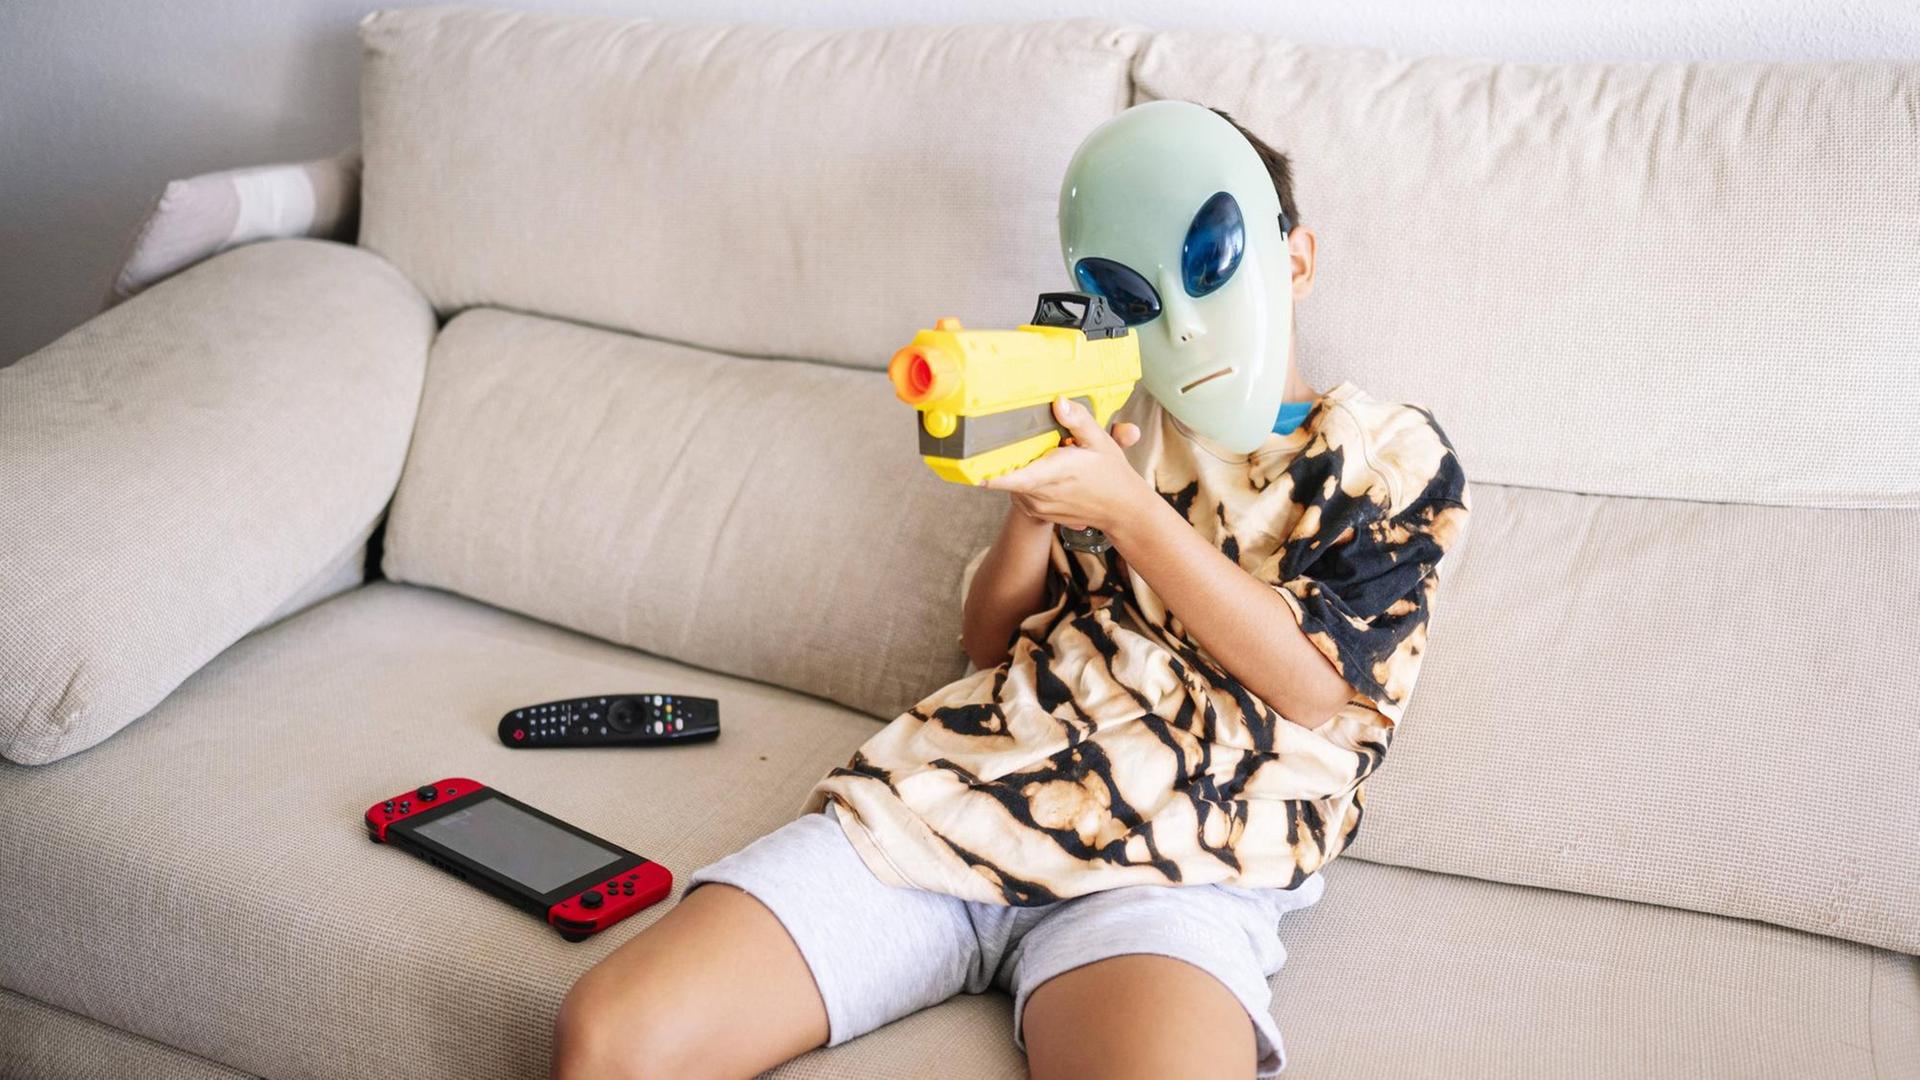 Ein Junge mit Alien-Maske und Plastikgewehr sitzt auf einem Sofa. file_source: imago / Westend 61